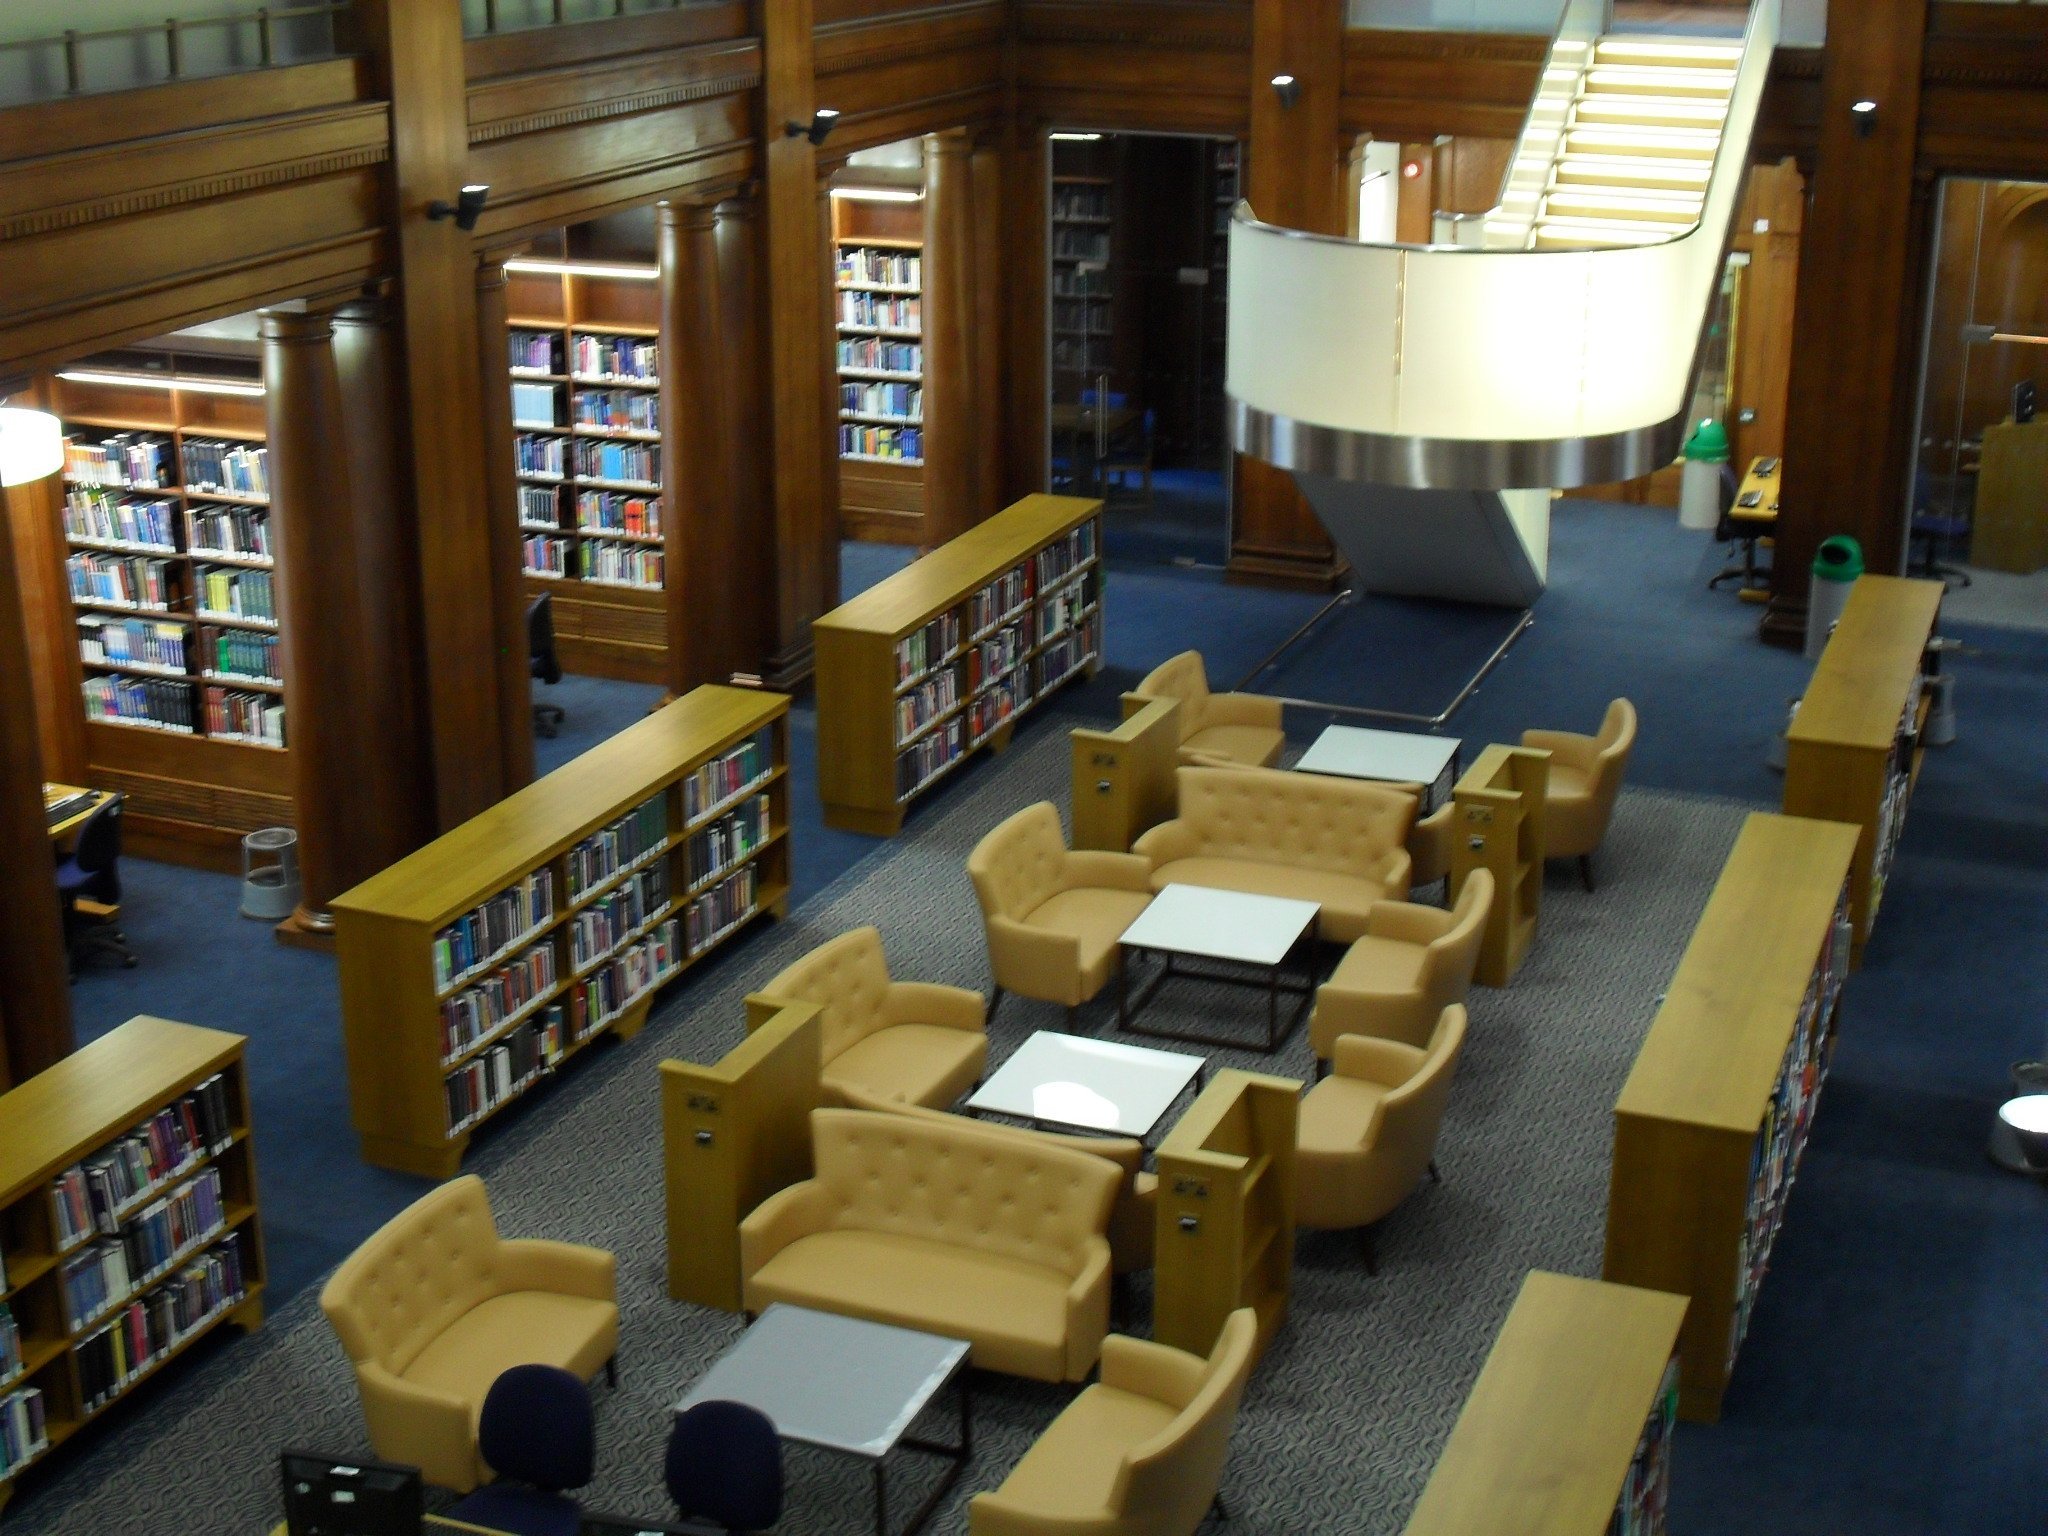 Библиотека и ее возможности. Имперский колледж Лондона библиотека. Лондонский Имперский колледж библиотека. Читальный зал библиотеки Капитолия Вашингтон. Библиотека Джорджа Пибоди, Балтимор, США.